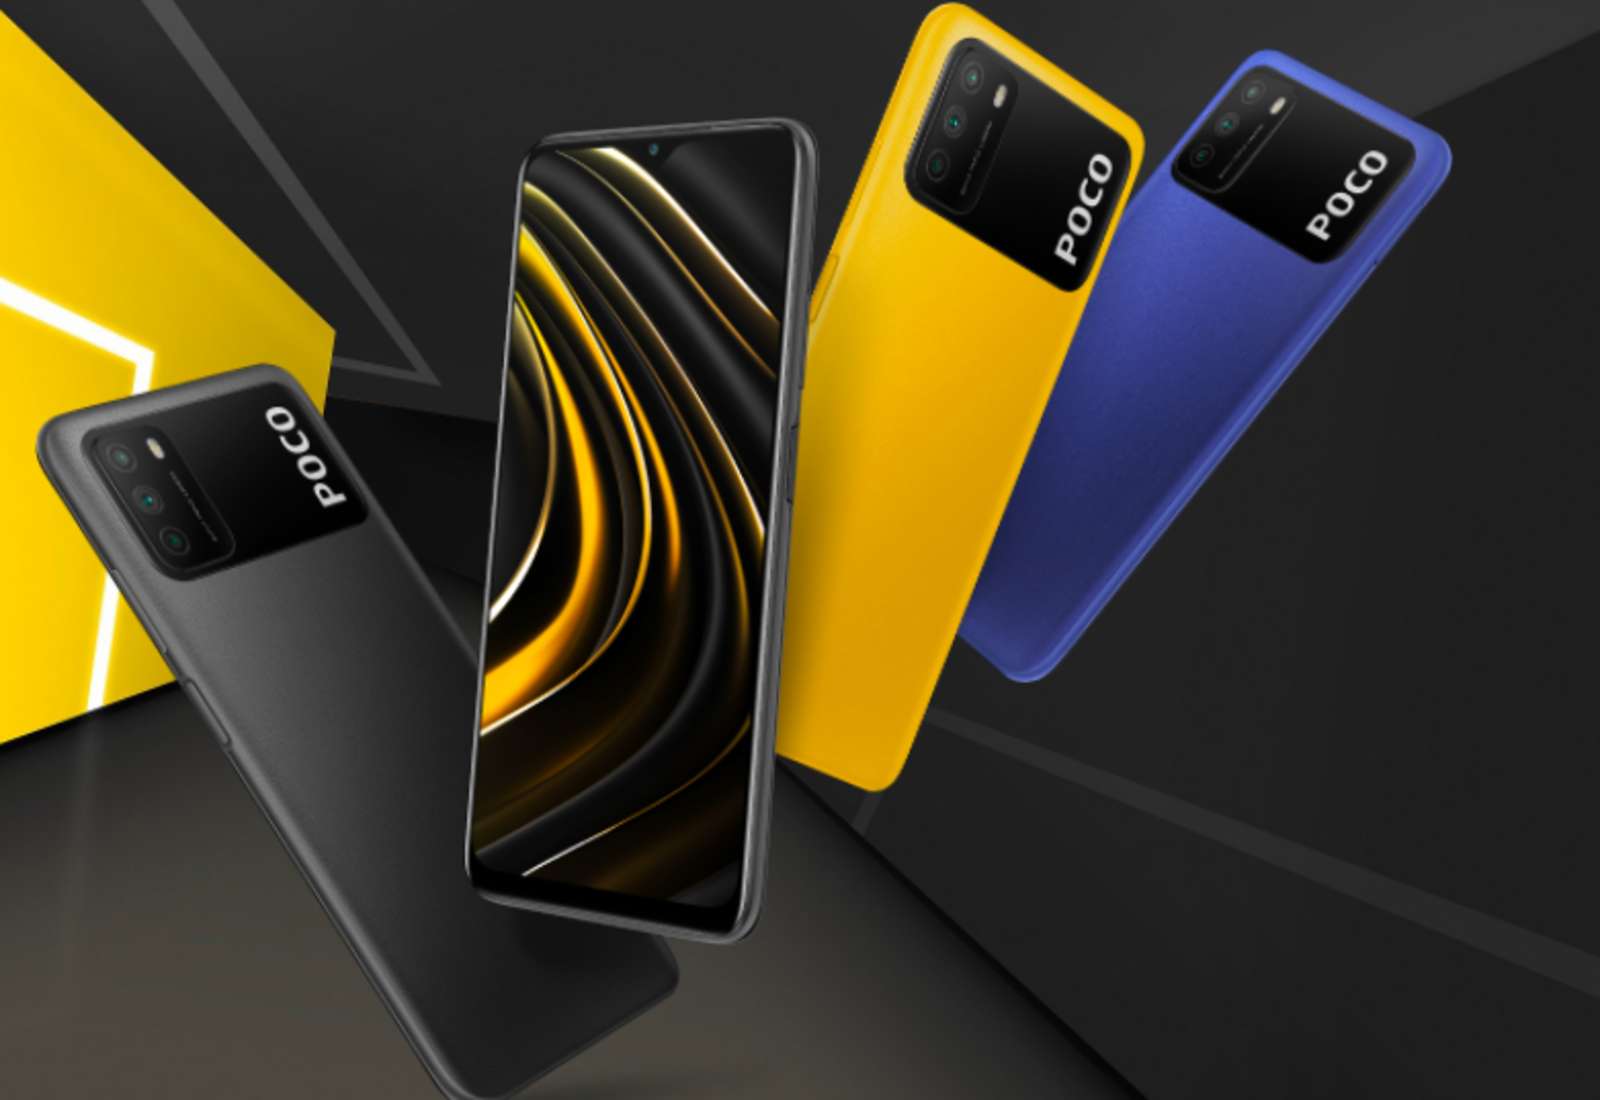 Top des meilleurs smartphones pour moins de 200 euros en 2021 - Xiaomi Poco M3
www.heavybull.com